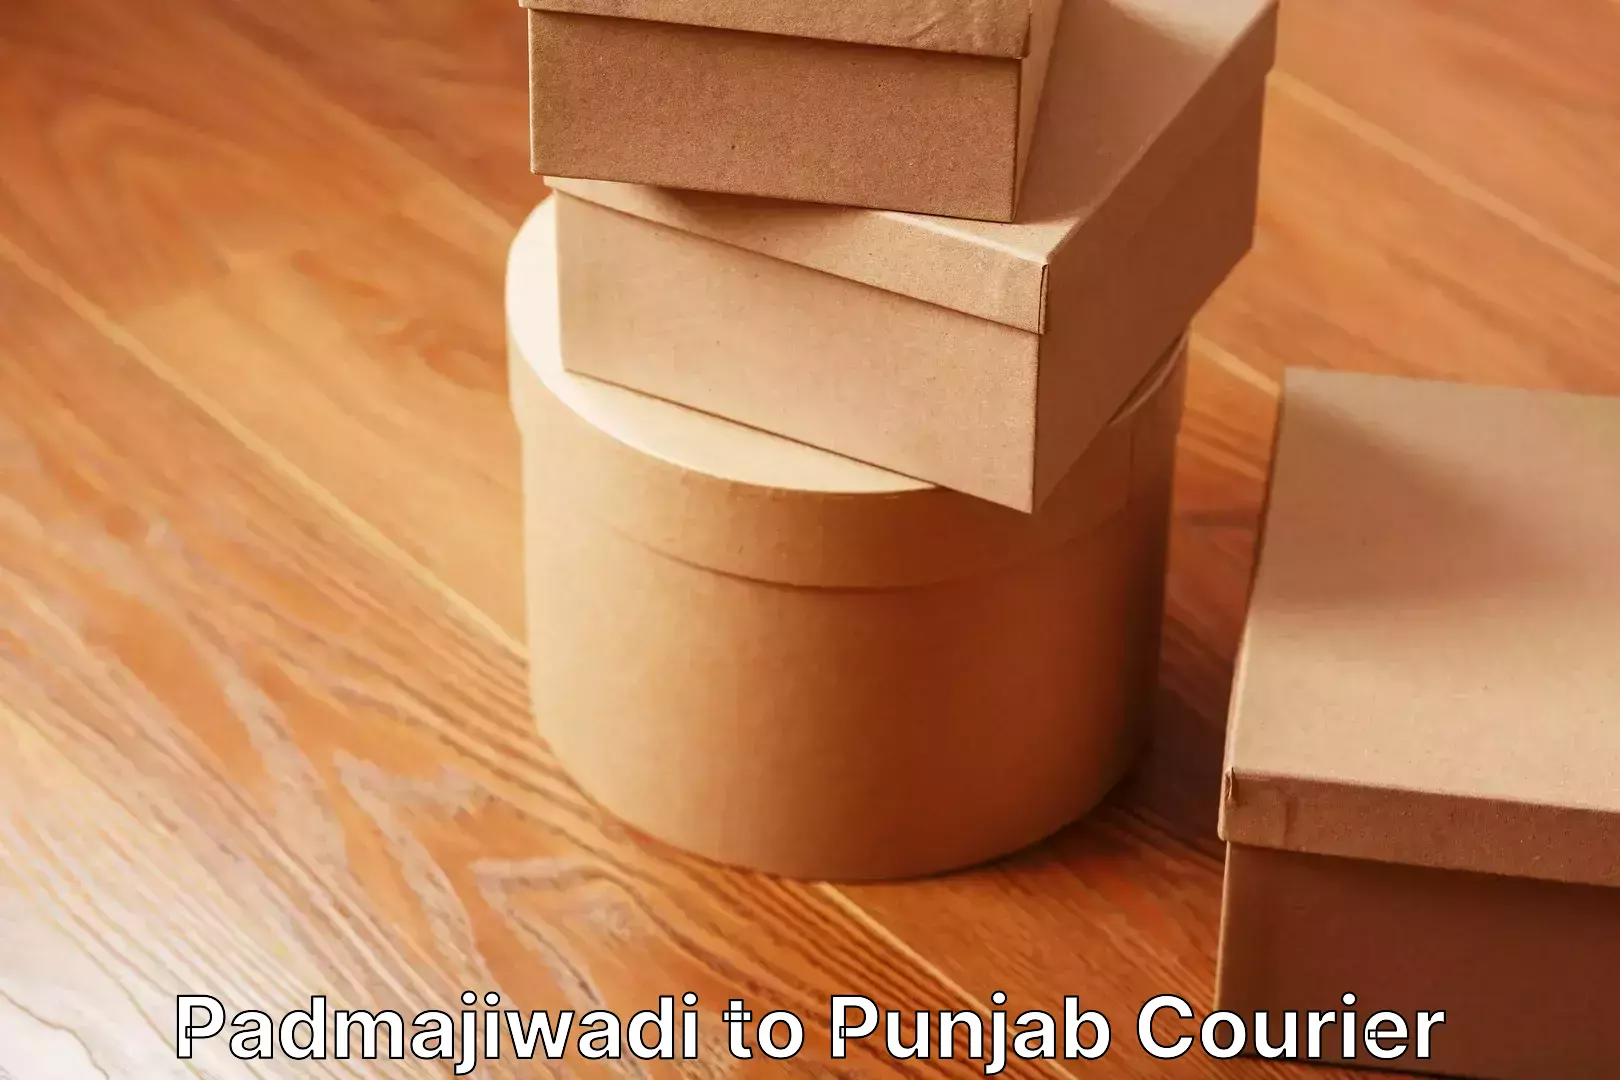 Moving service excellence Padmajiwadi to Punjab